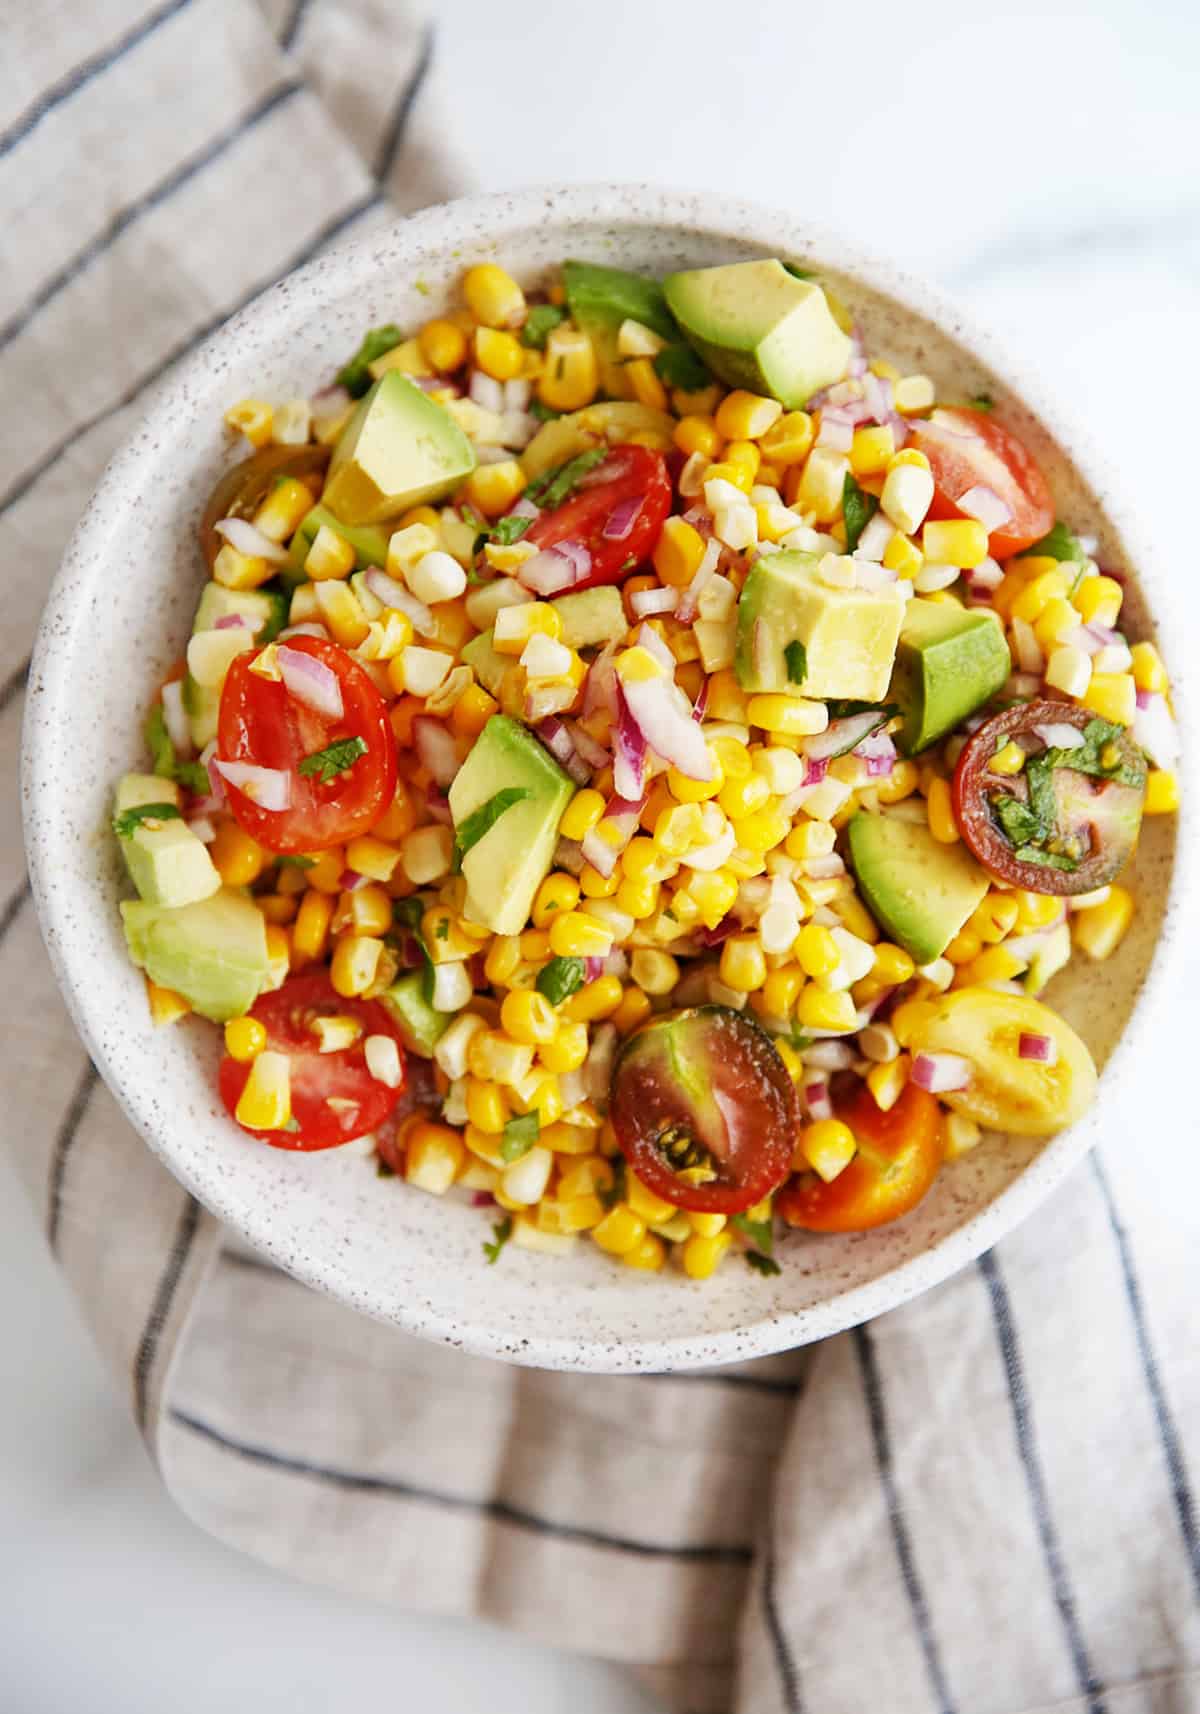 Corn and avocado salsa recipe in a bowl